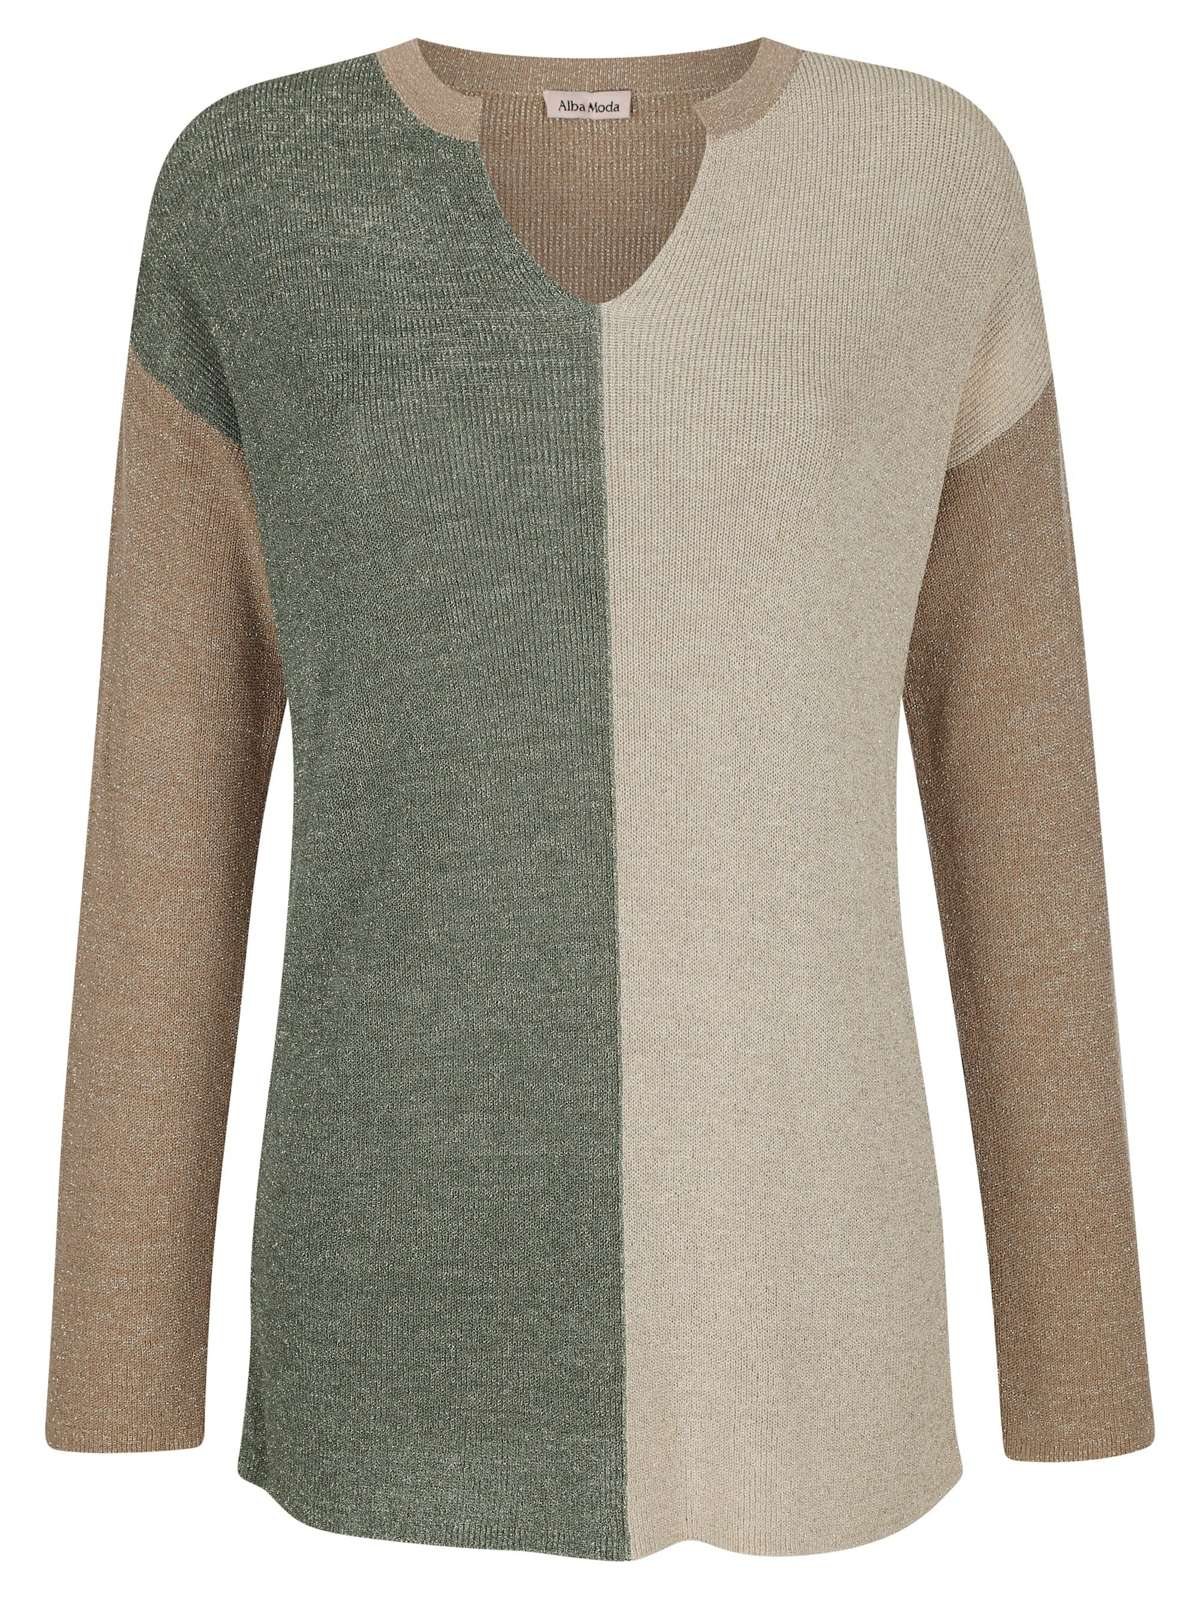 Вязаный пуловер спицами из пряжи с модным эффектом.